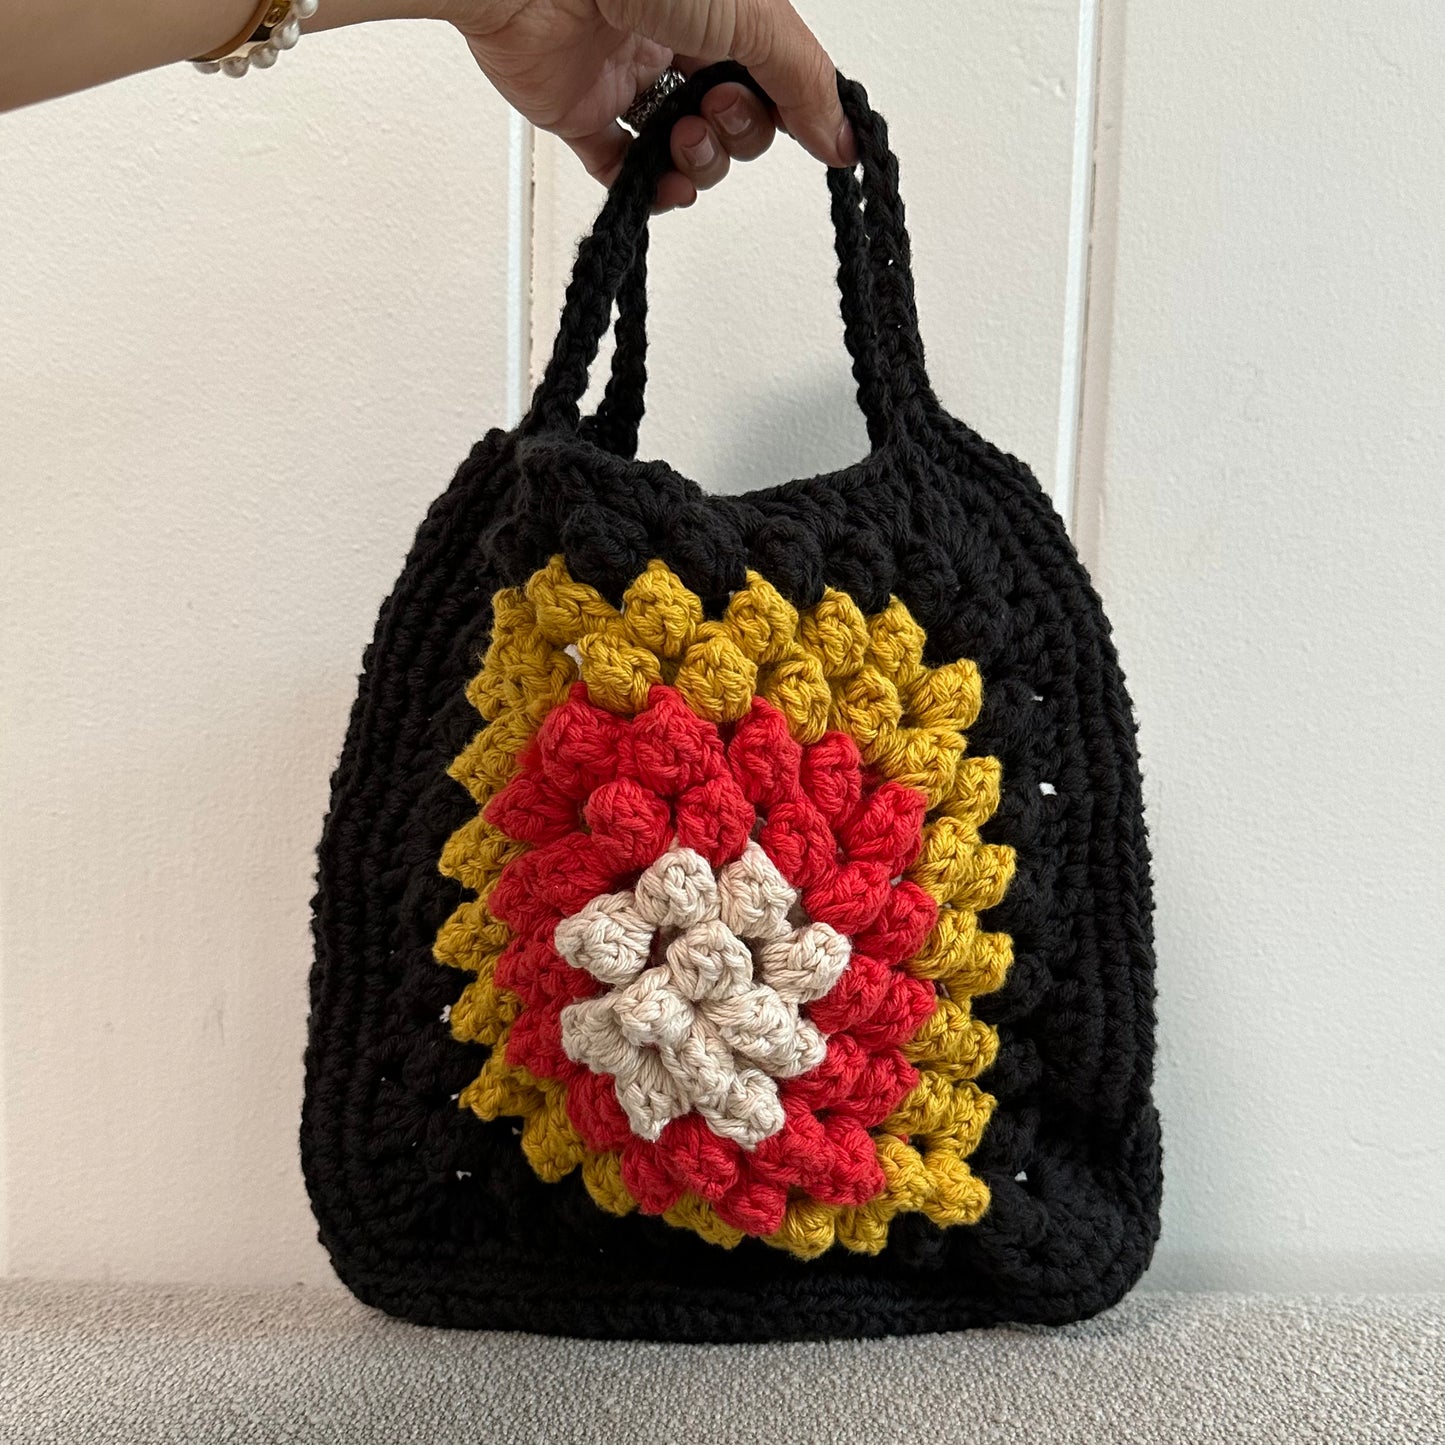 Crochet Granny Squares Bag Video